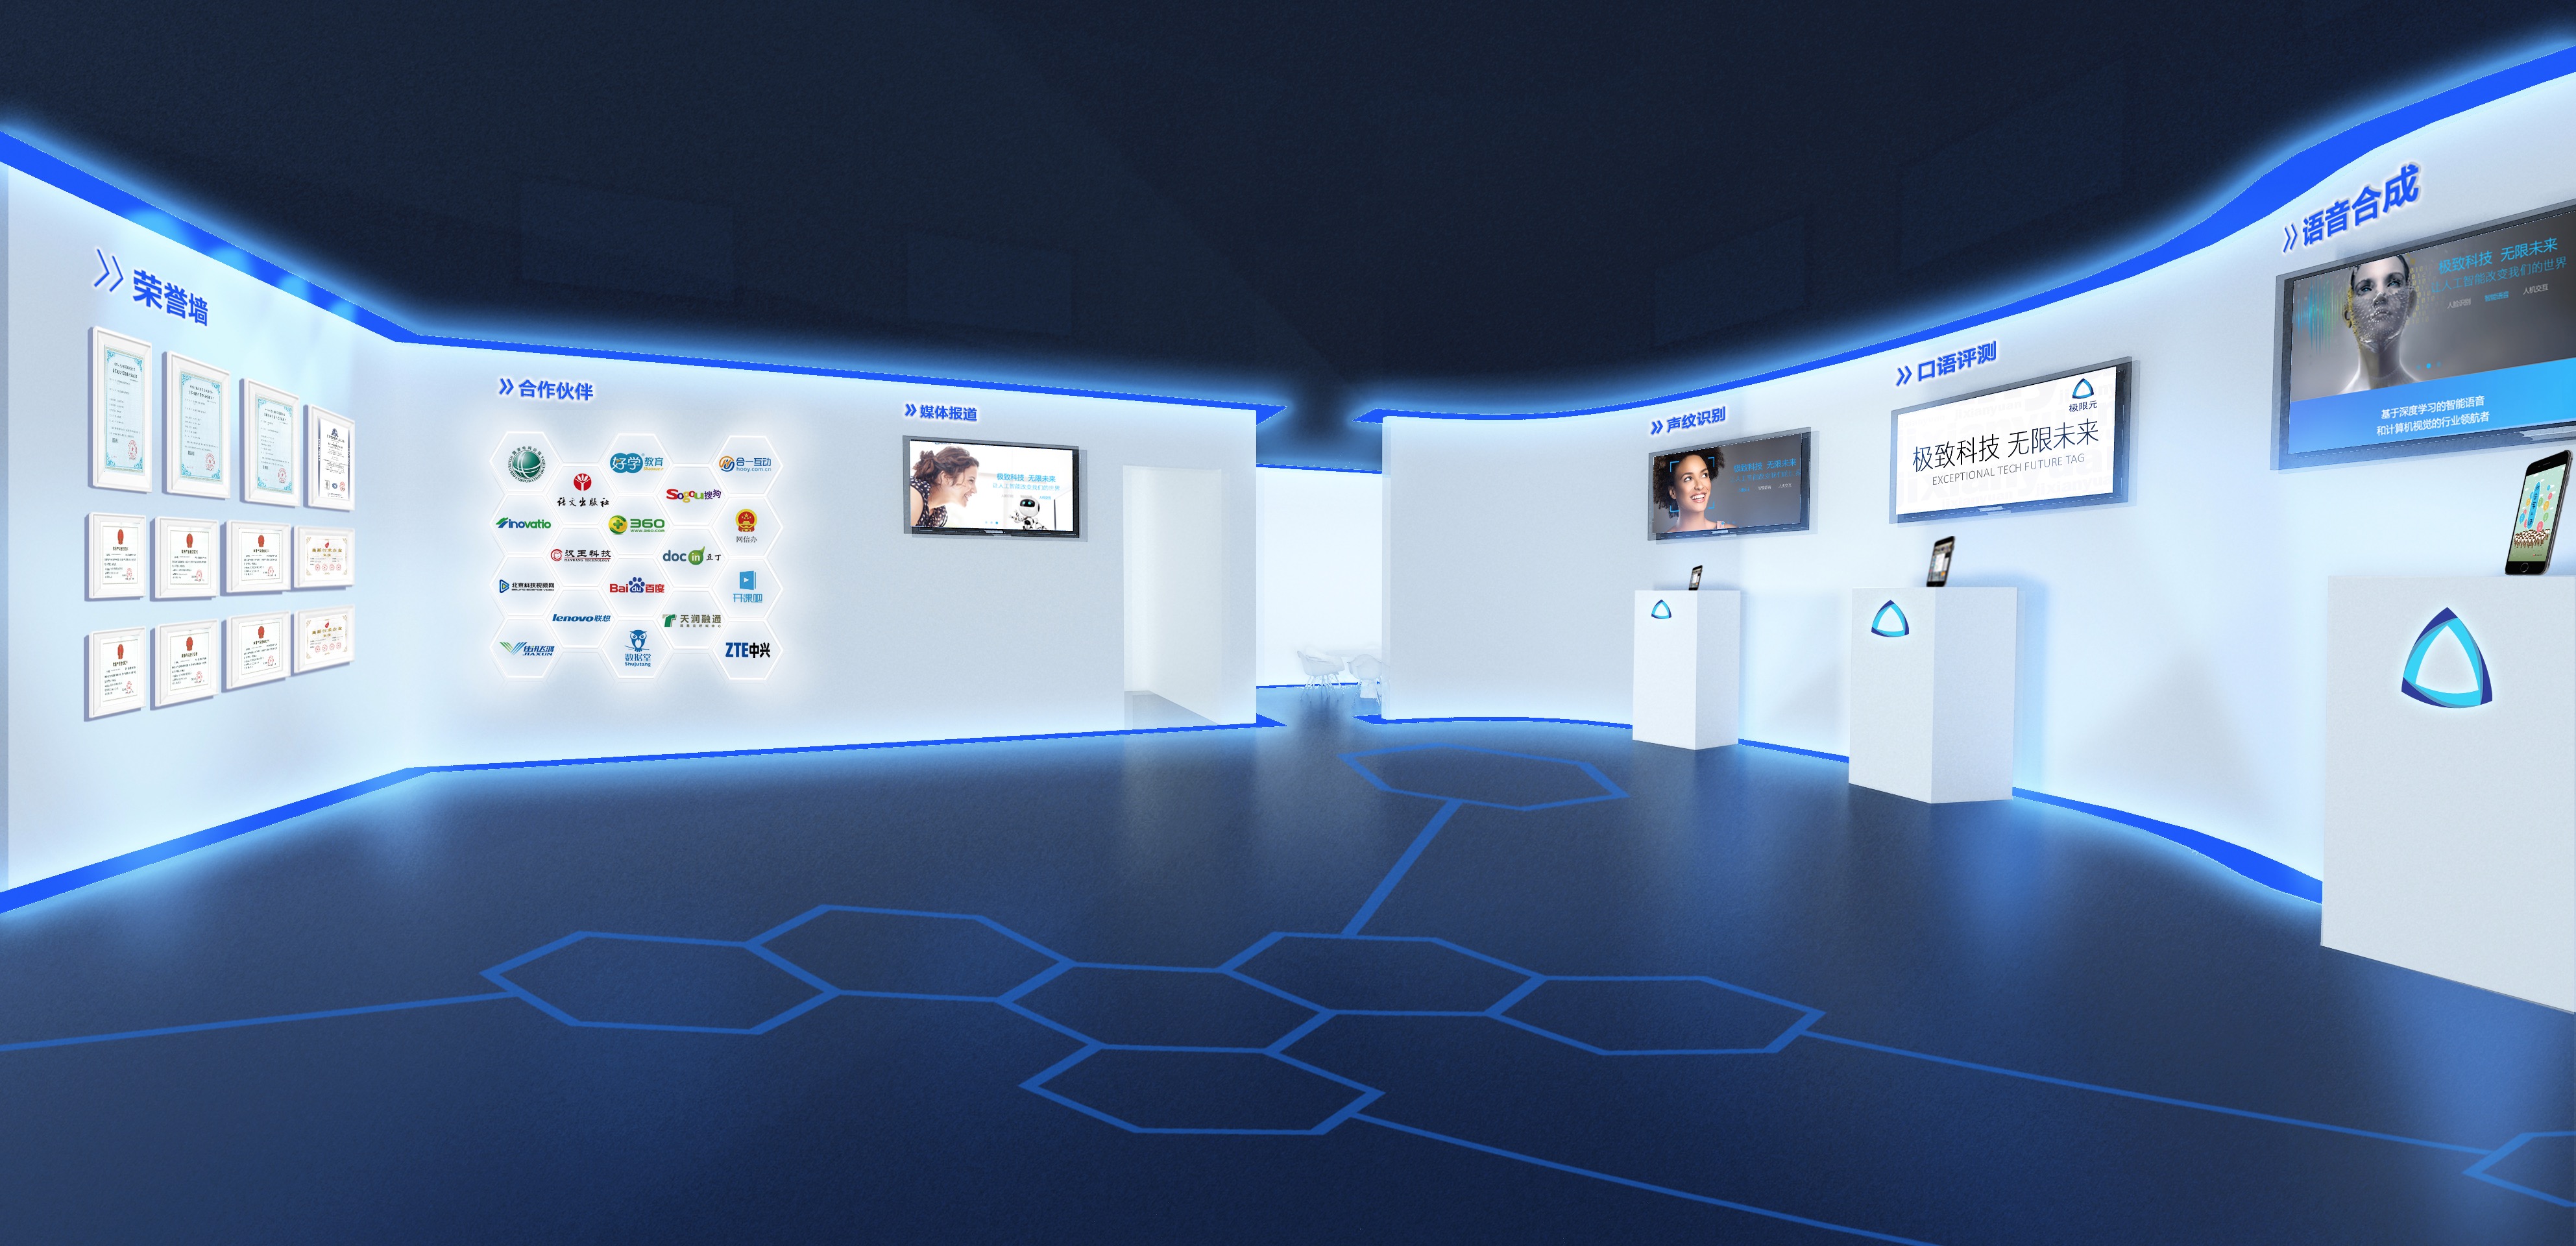 这是一张现代化的虚拟展览厅图片，内有多个展示屏幕，蓝色调设计，科技感强，地面有六边形图案。